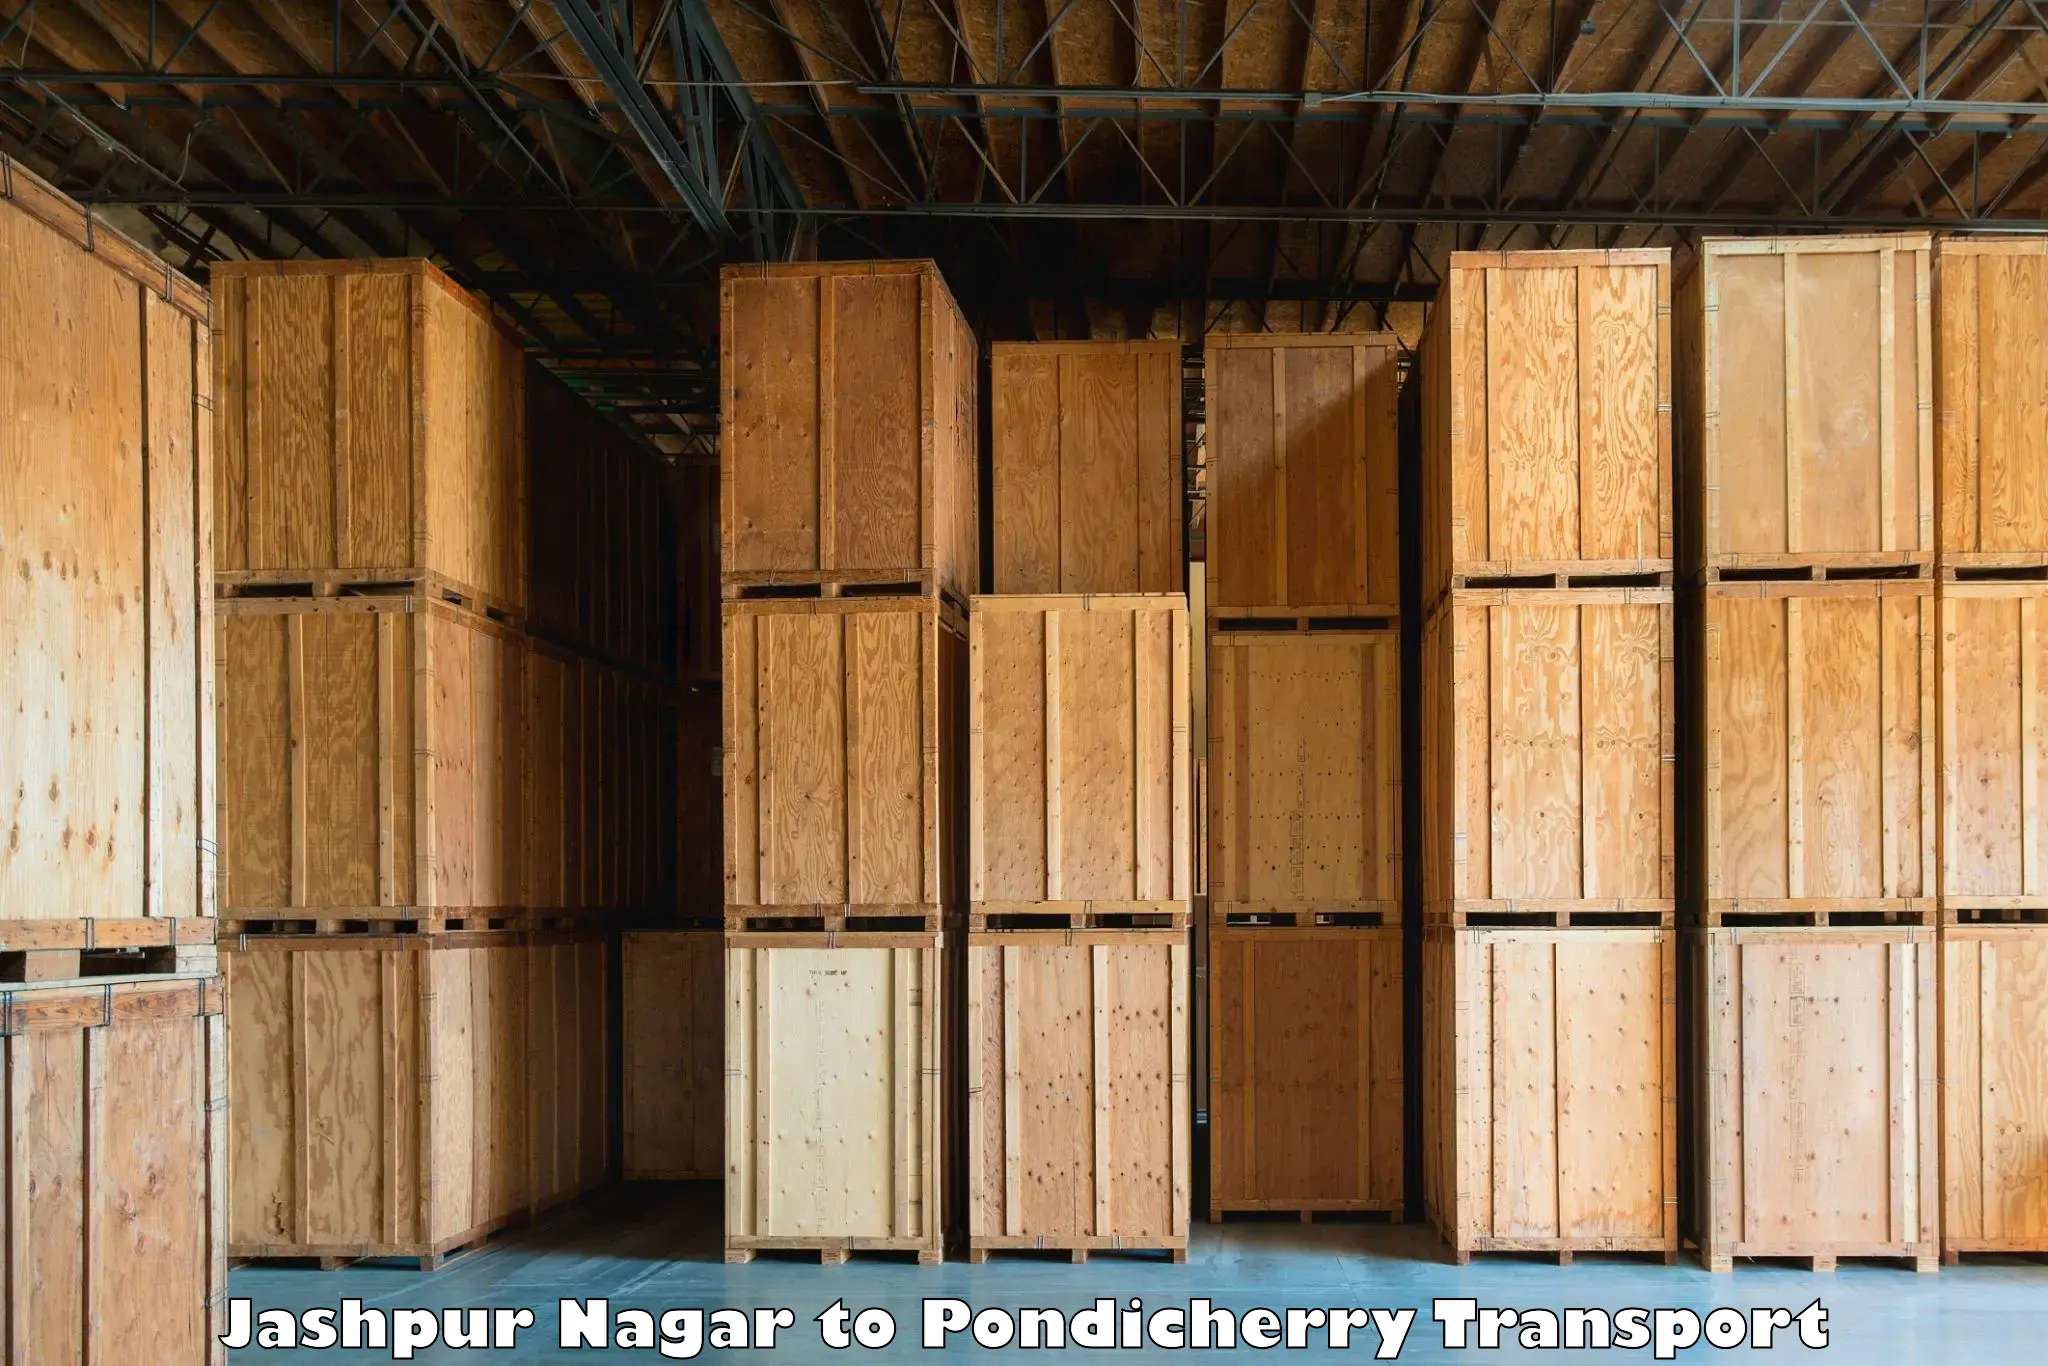 Transport shared services Jashpur Nagar to Pondicherry